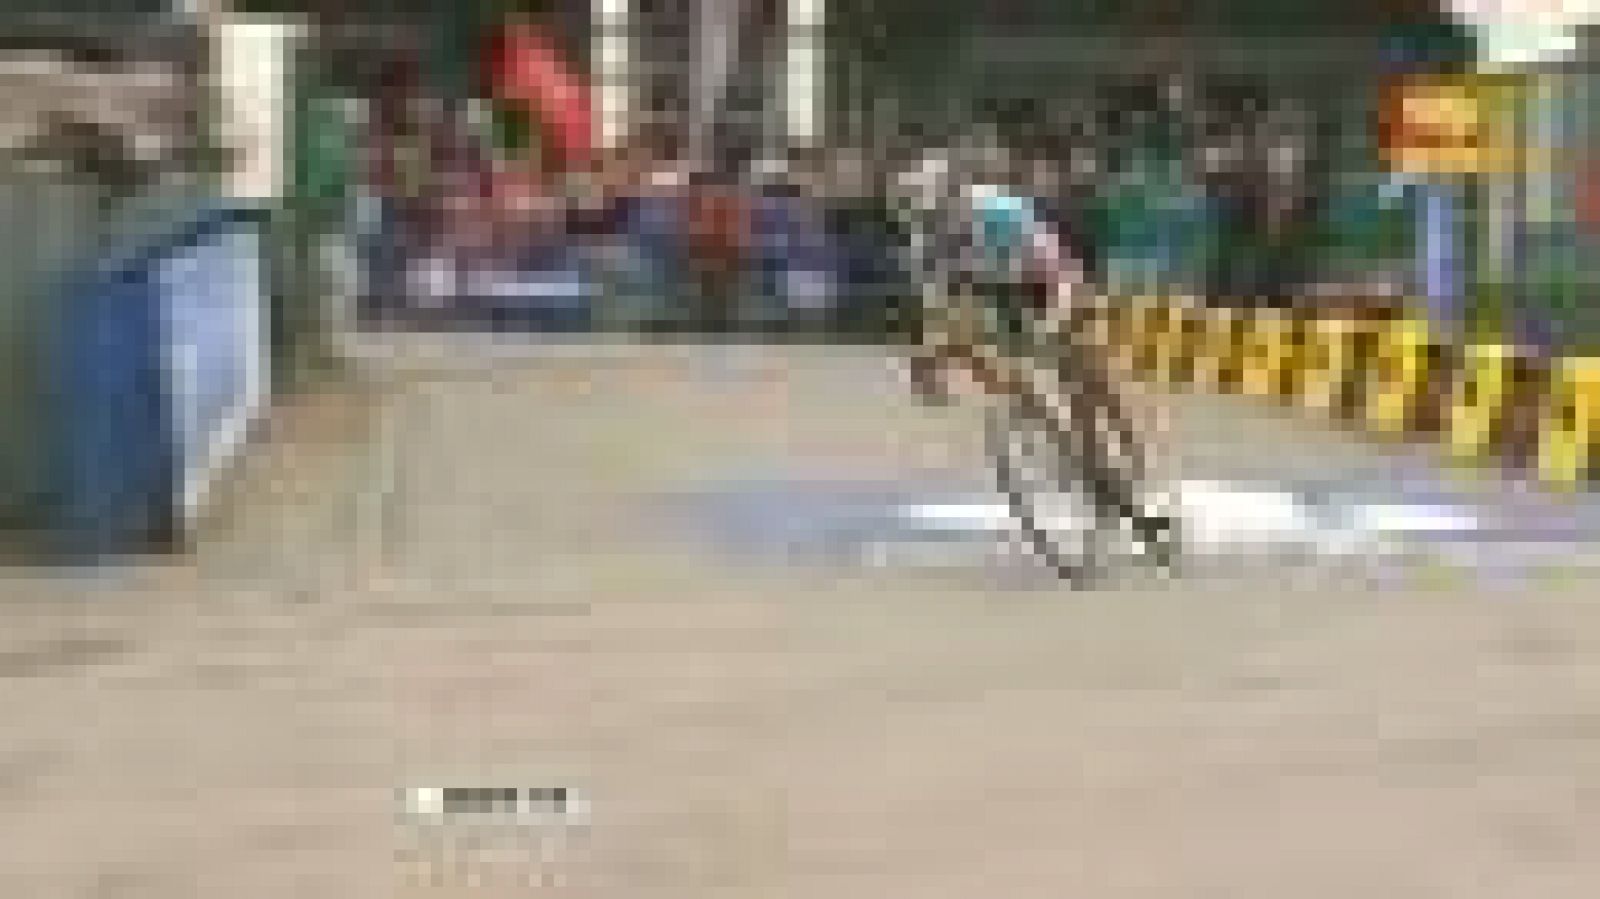 El belga Tom Boonen (Omega Pharma) consiguió en solitario su cuarta victoria en la clásica París-Roubaix, conocida por "el infierno del norte", tras un ataque a 50 kilómetros del final. Boonen paró el cronómetro de meta en 5h55:22, mientras por detrá